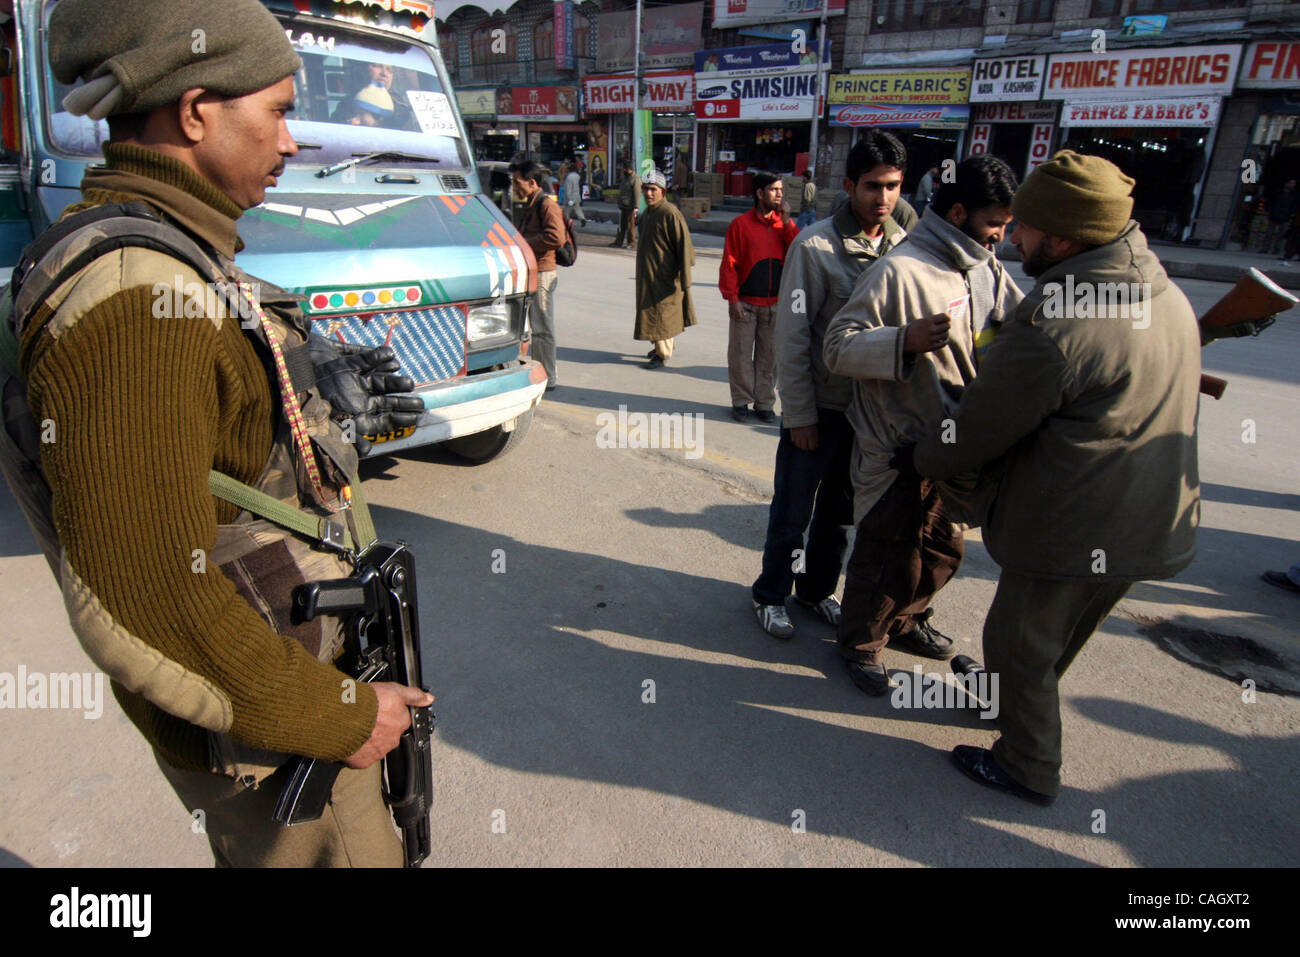 Vues des arrangements de sécurité comme les gens à vérifier,vehciles passager été fouillé soldats paramilitaires veillée tenue à Srinagar Inde, mercredi, le 25 janvier 2008, la sécurité a été renforcé dans le Jammu-et-Cachemire en avant de la Journée de la République le 26 janvier. PHOTO/ALTAF ZARGAR Banque D'Images